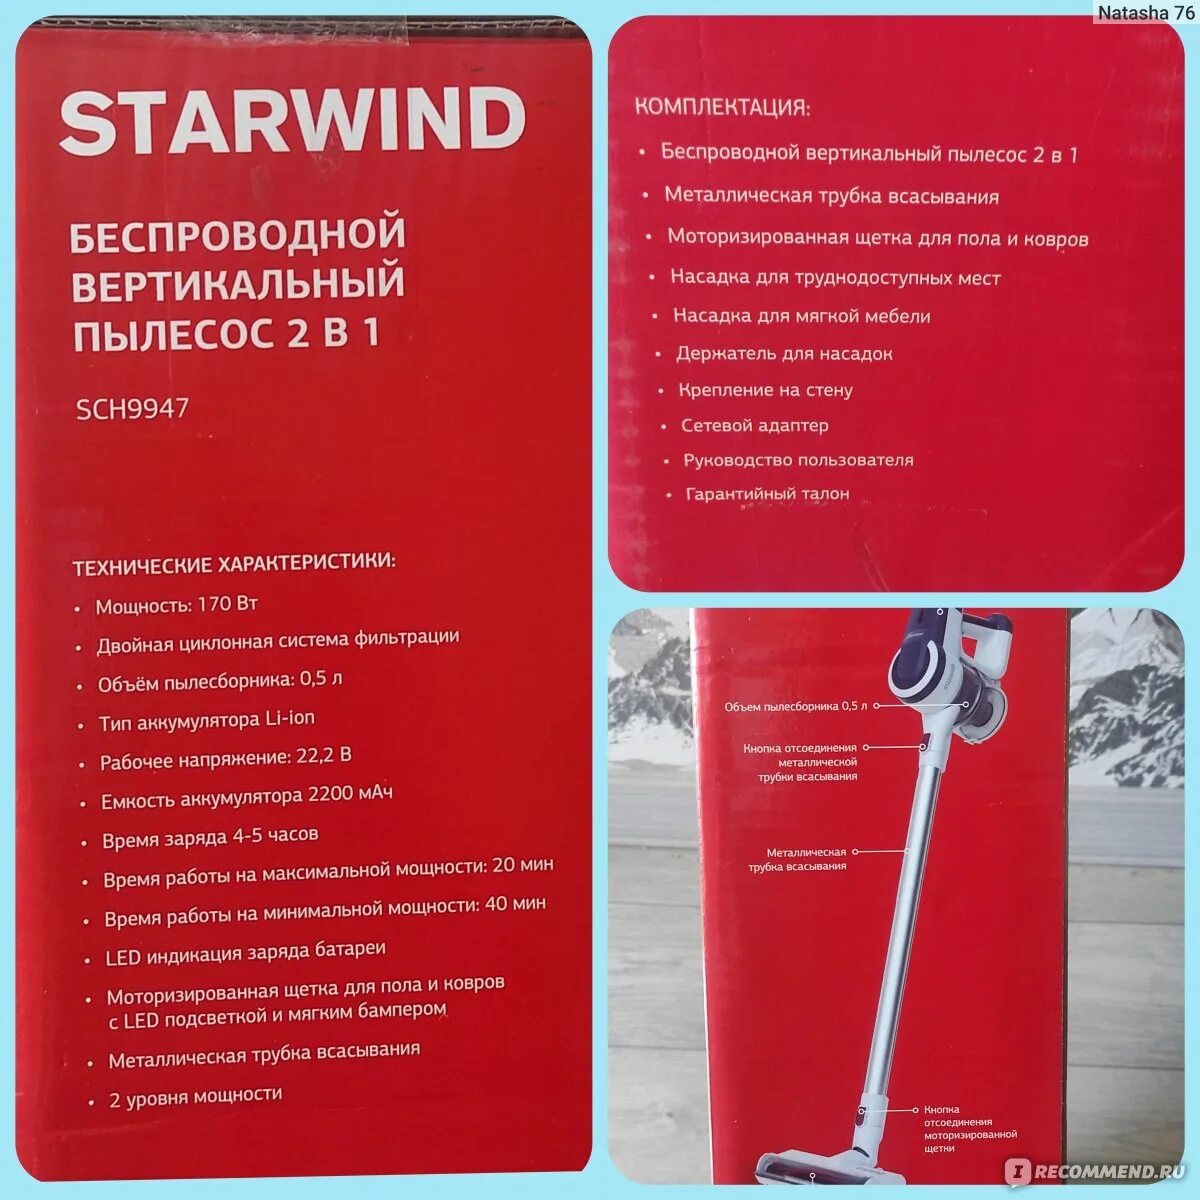 Starwind sch9950. STARWIND пылесос вертикальный. СТАРВИНД пылесос вертикальный аккумуляторный. Вертикальный пылесос STARWIND беспроводной. Пылесос ручной STARWIND sch9915.